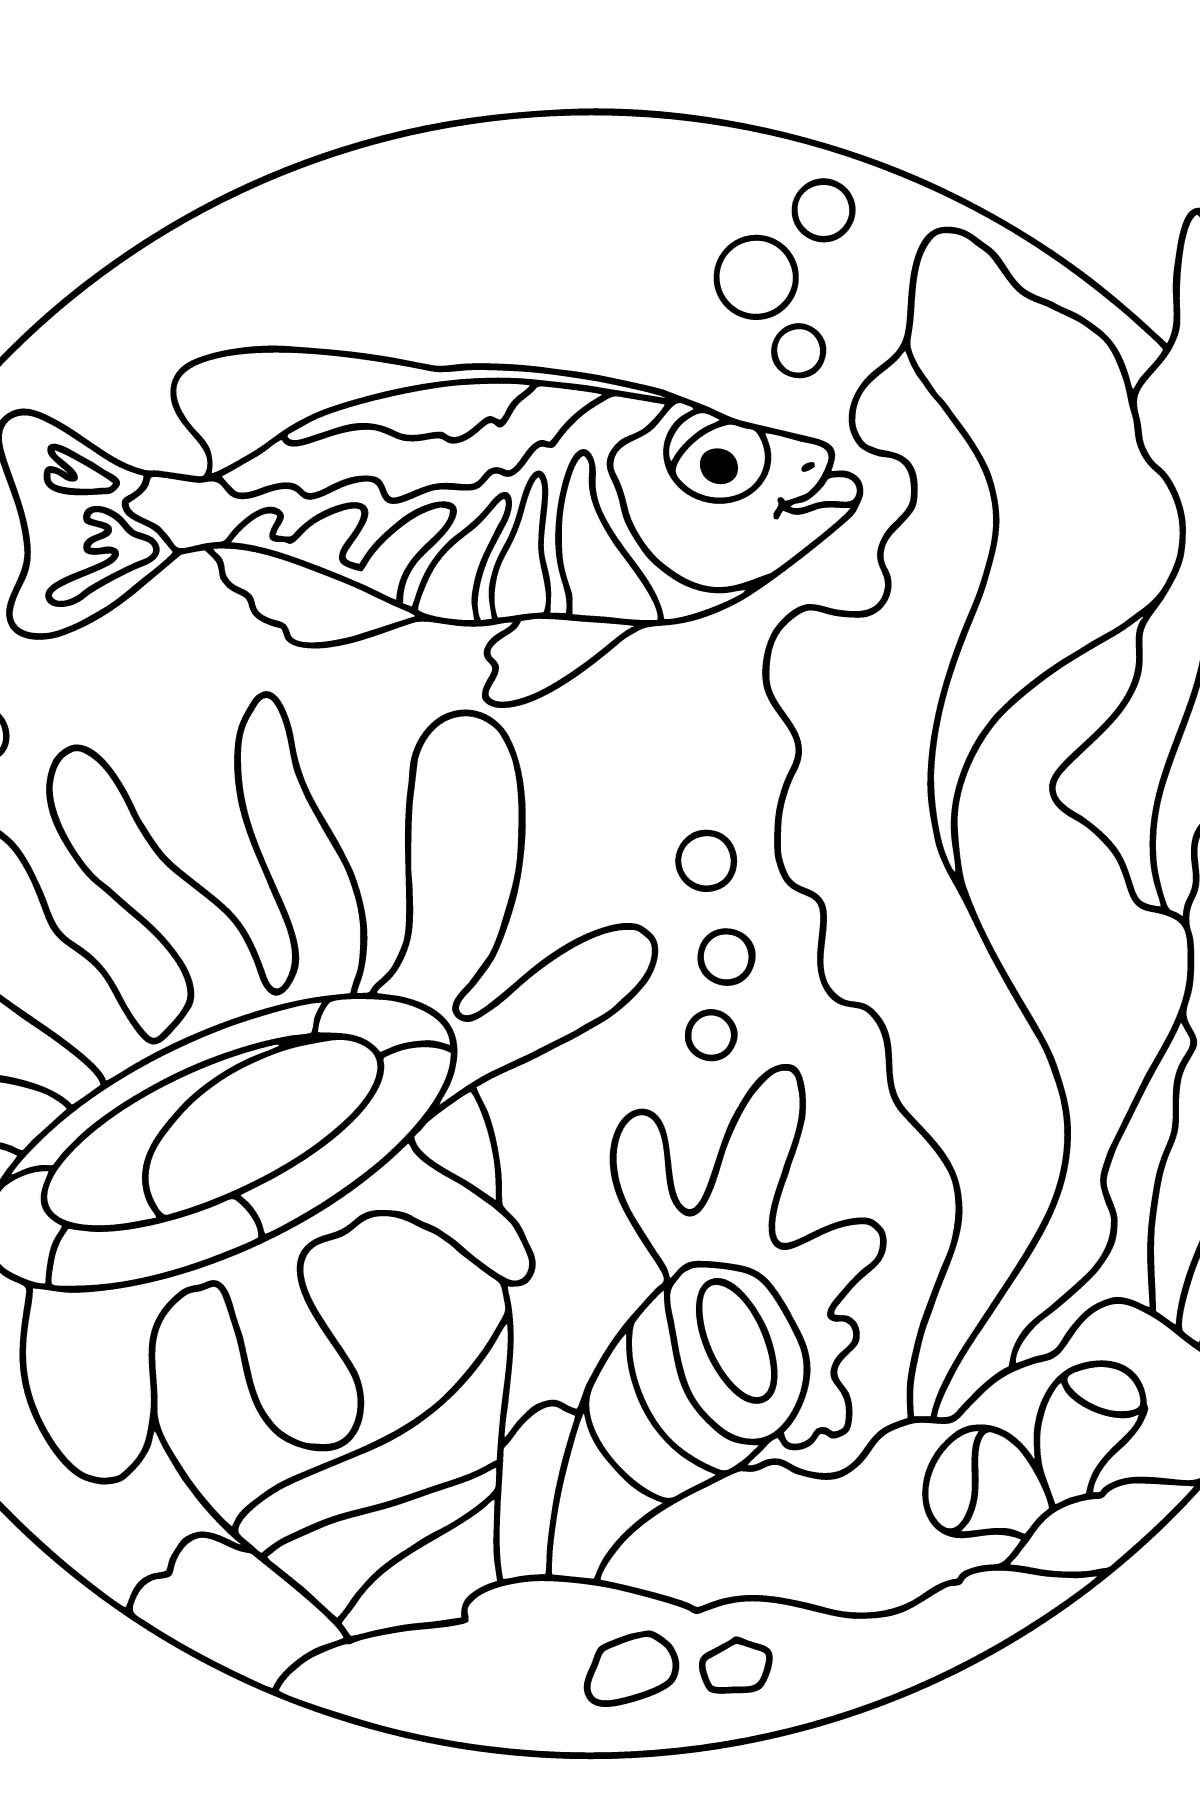 Раскраска очаровательная рыбка - Картинки для Детей